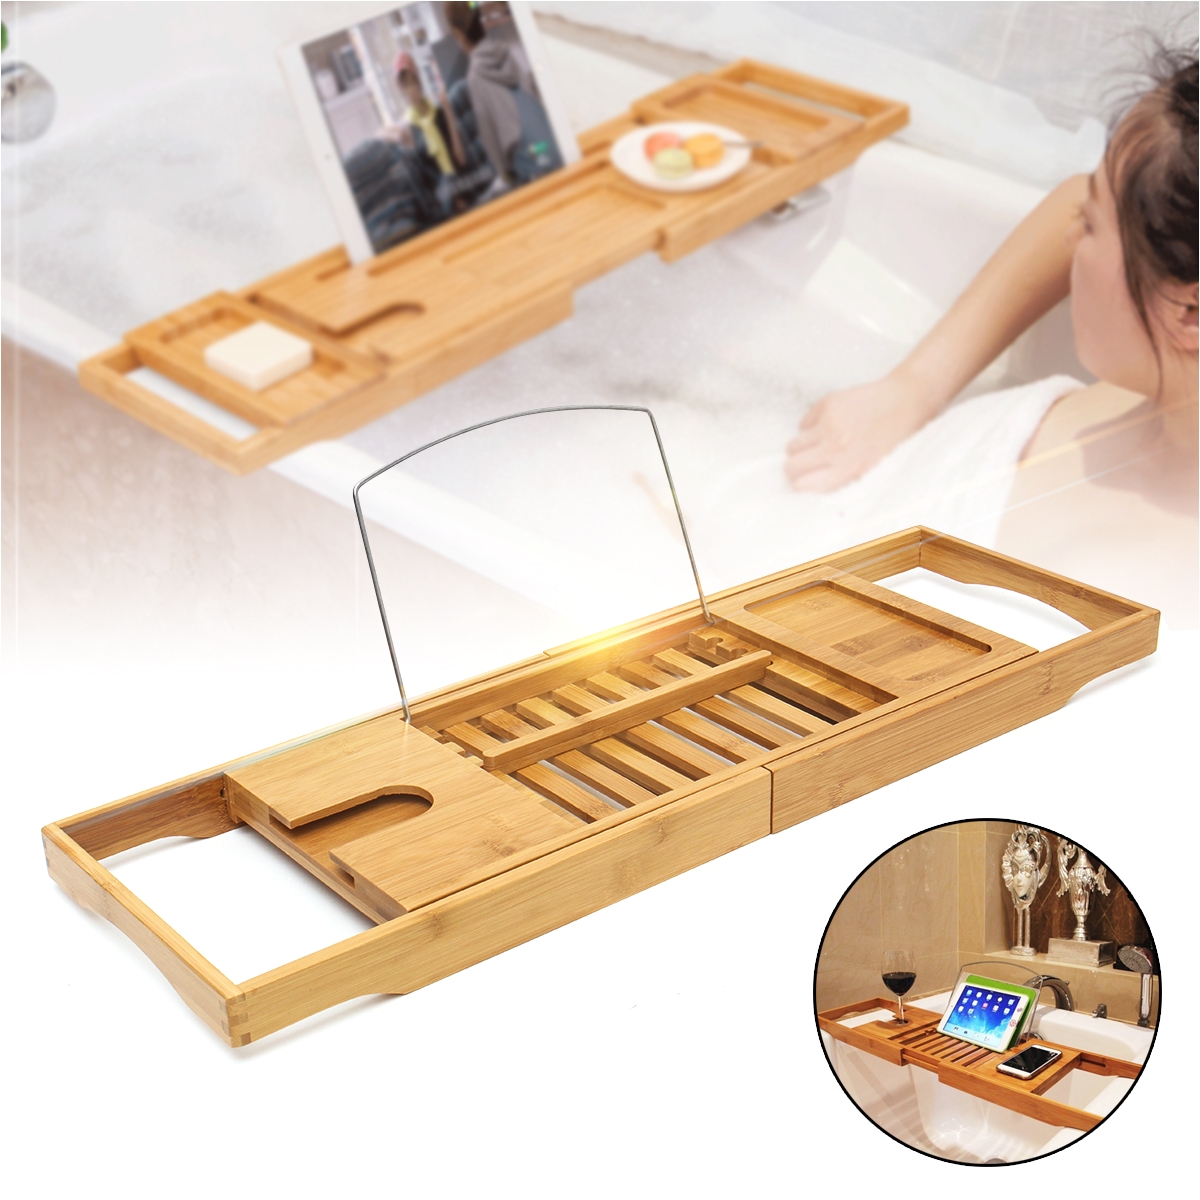 luxury bathroom bamboo bath shelf bath tray bathtub holder bridge tub caddy tray rack wine holder